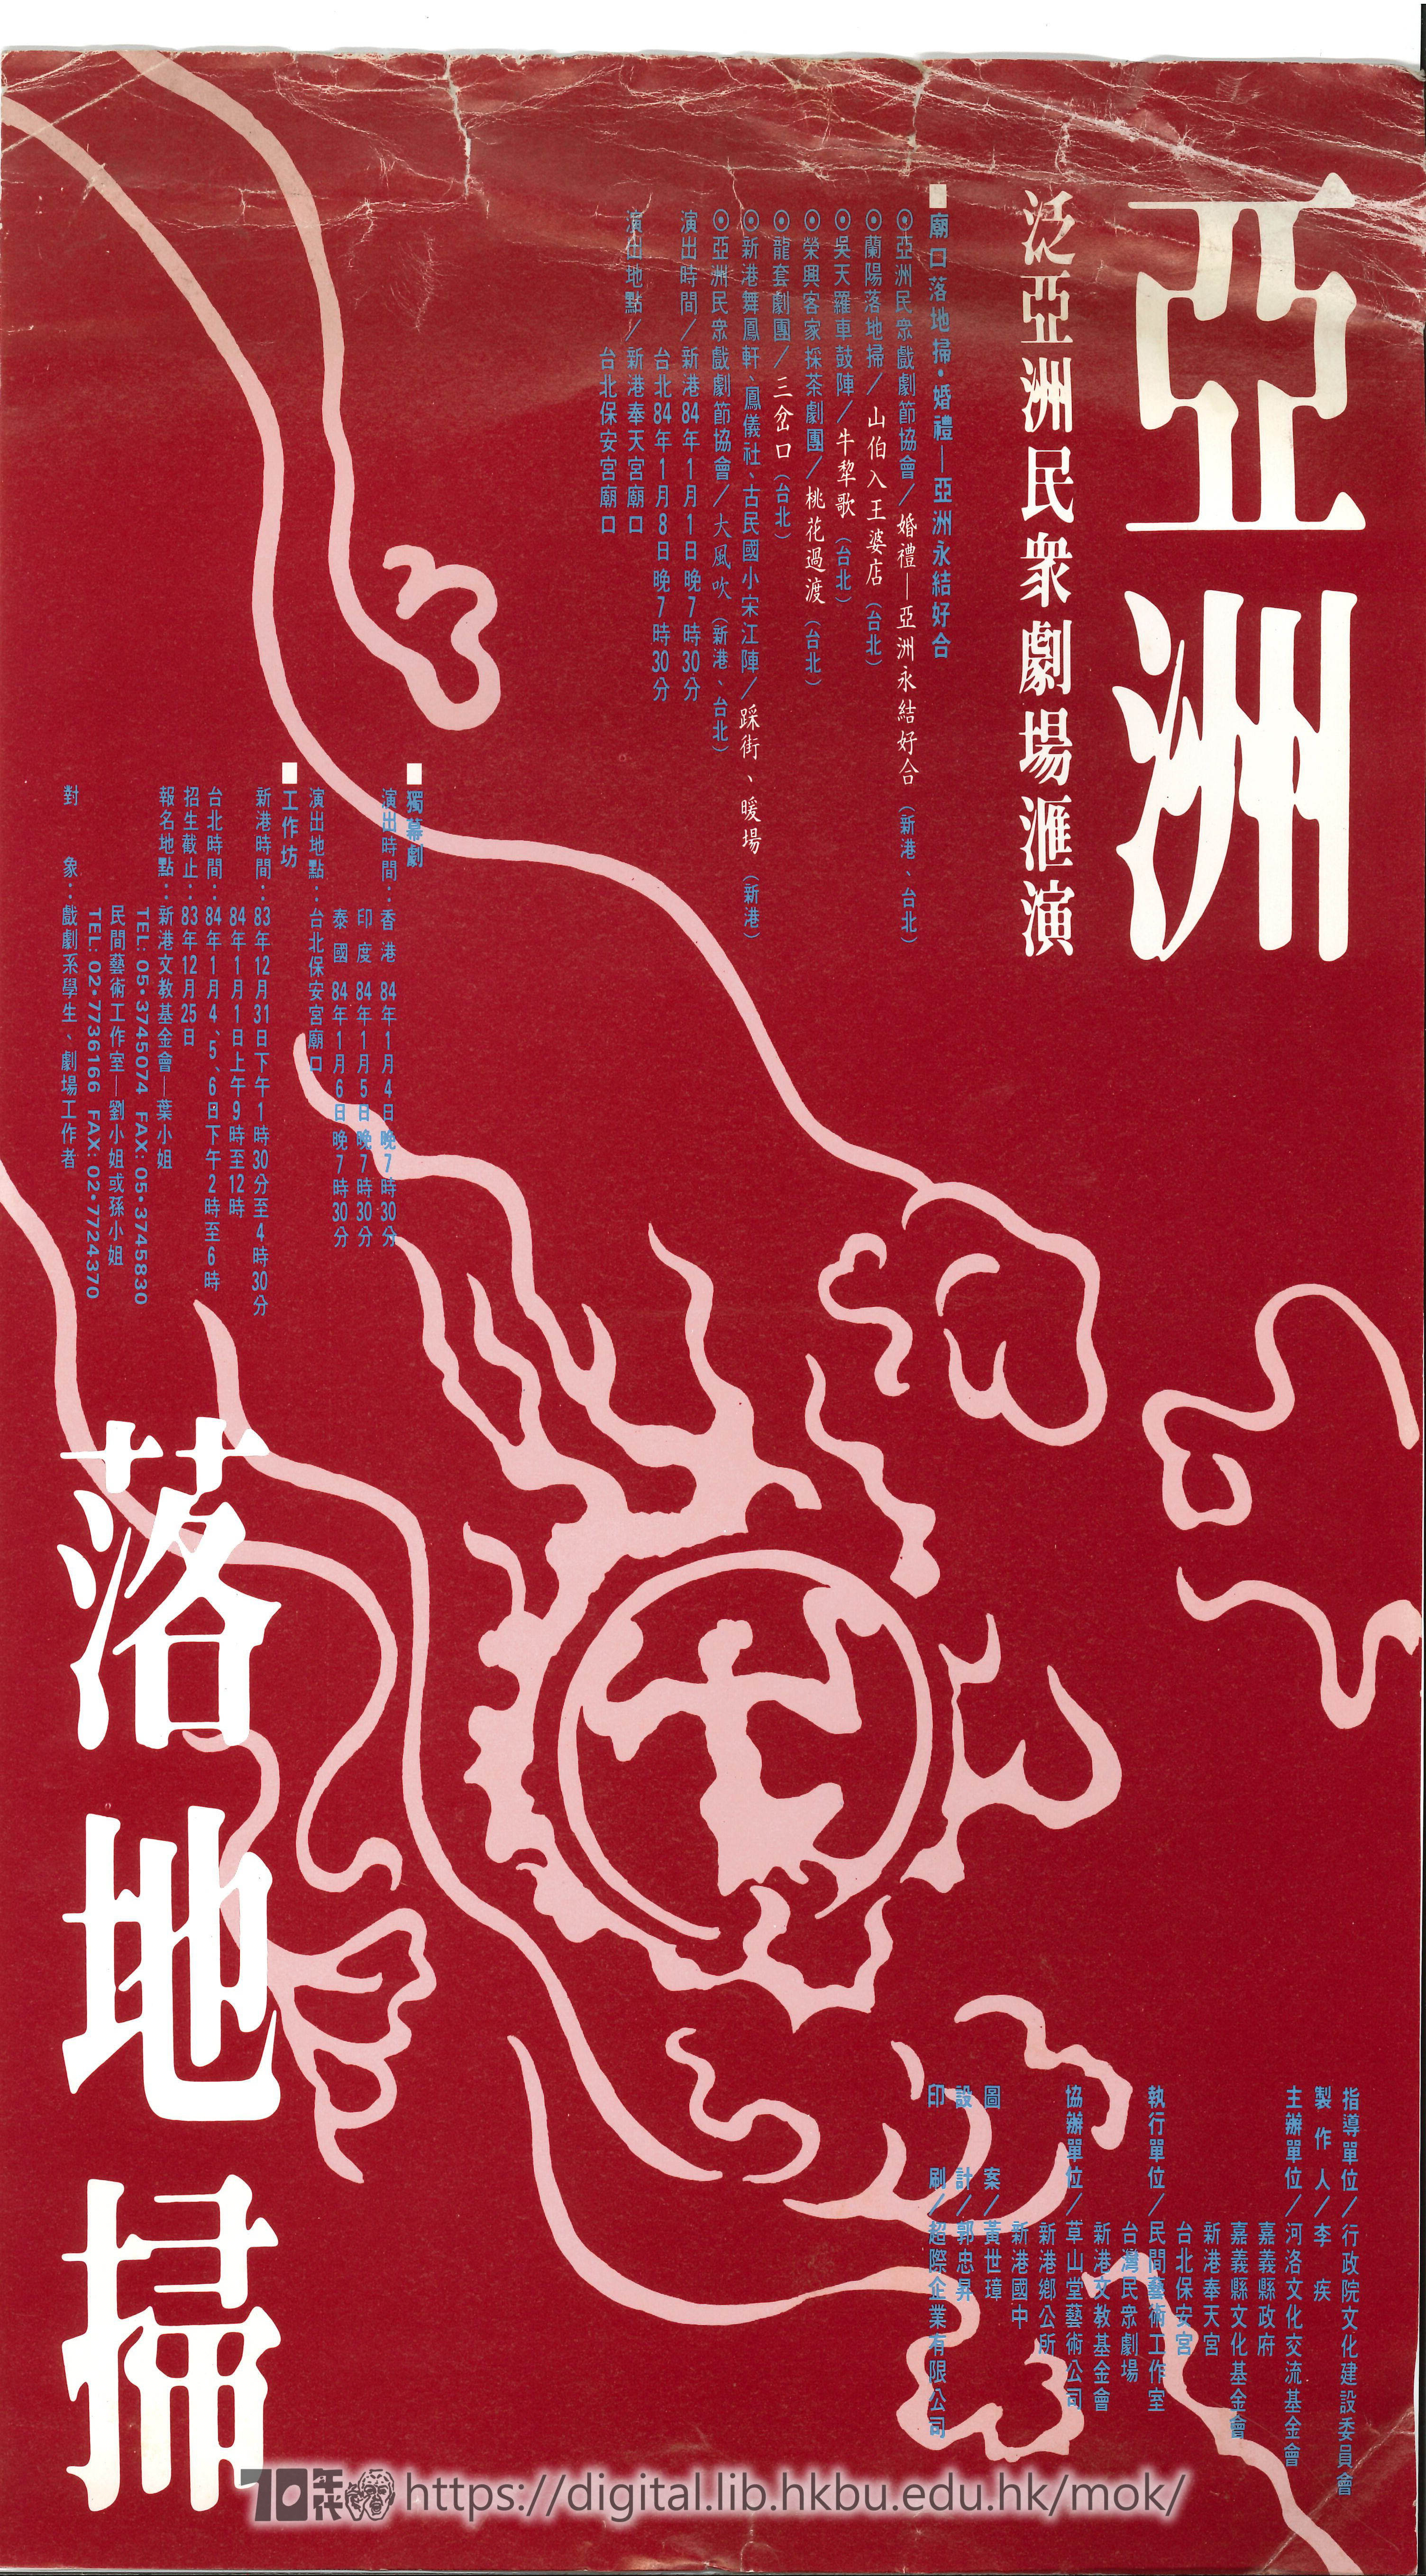 Big Wind  Poster of Big Wind (Taiwan)  